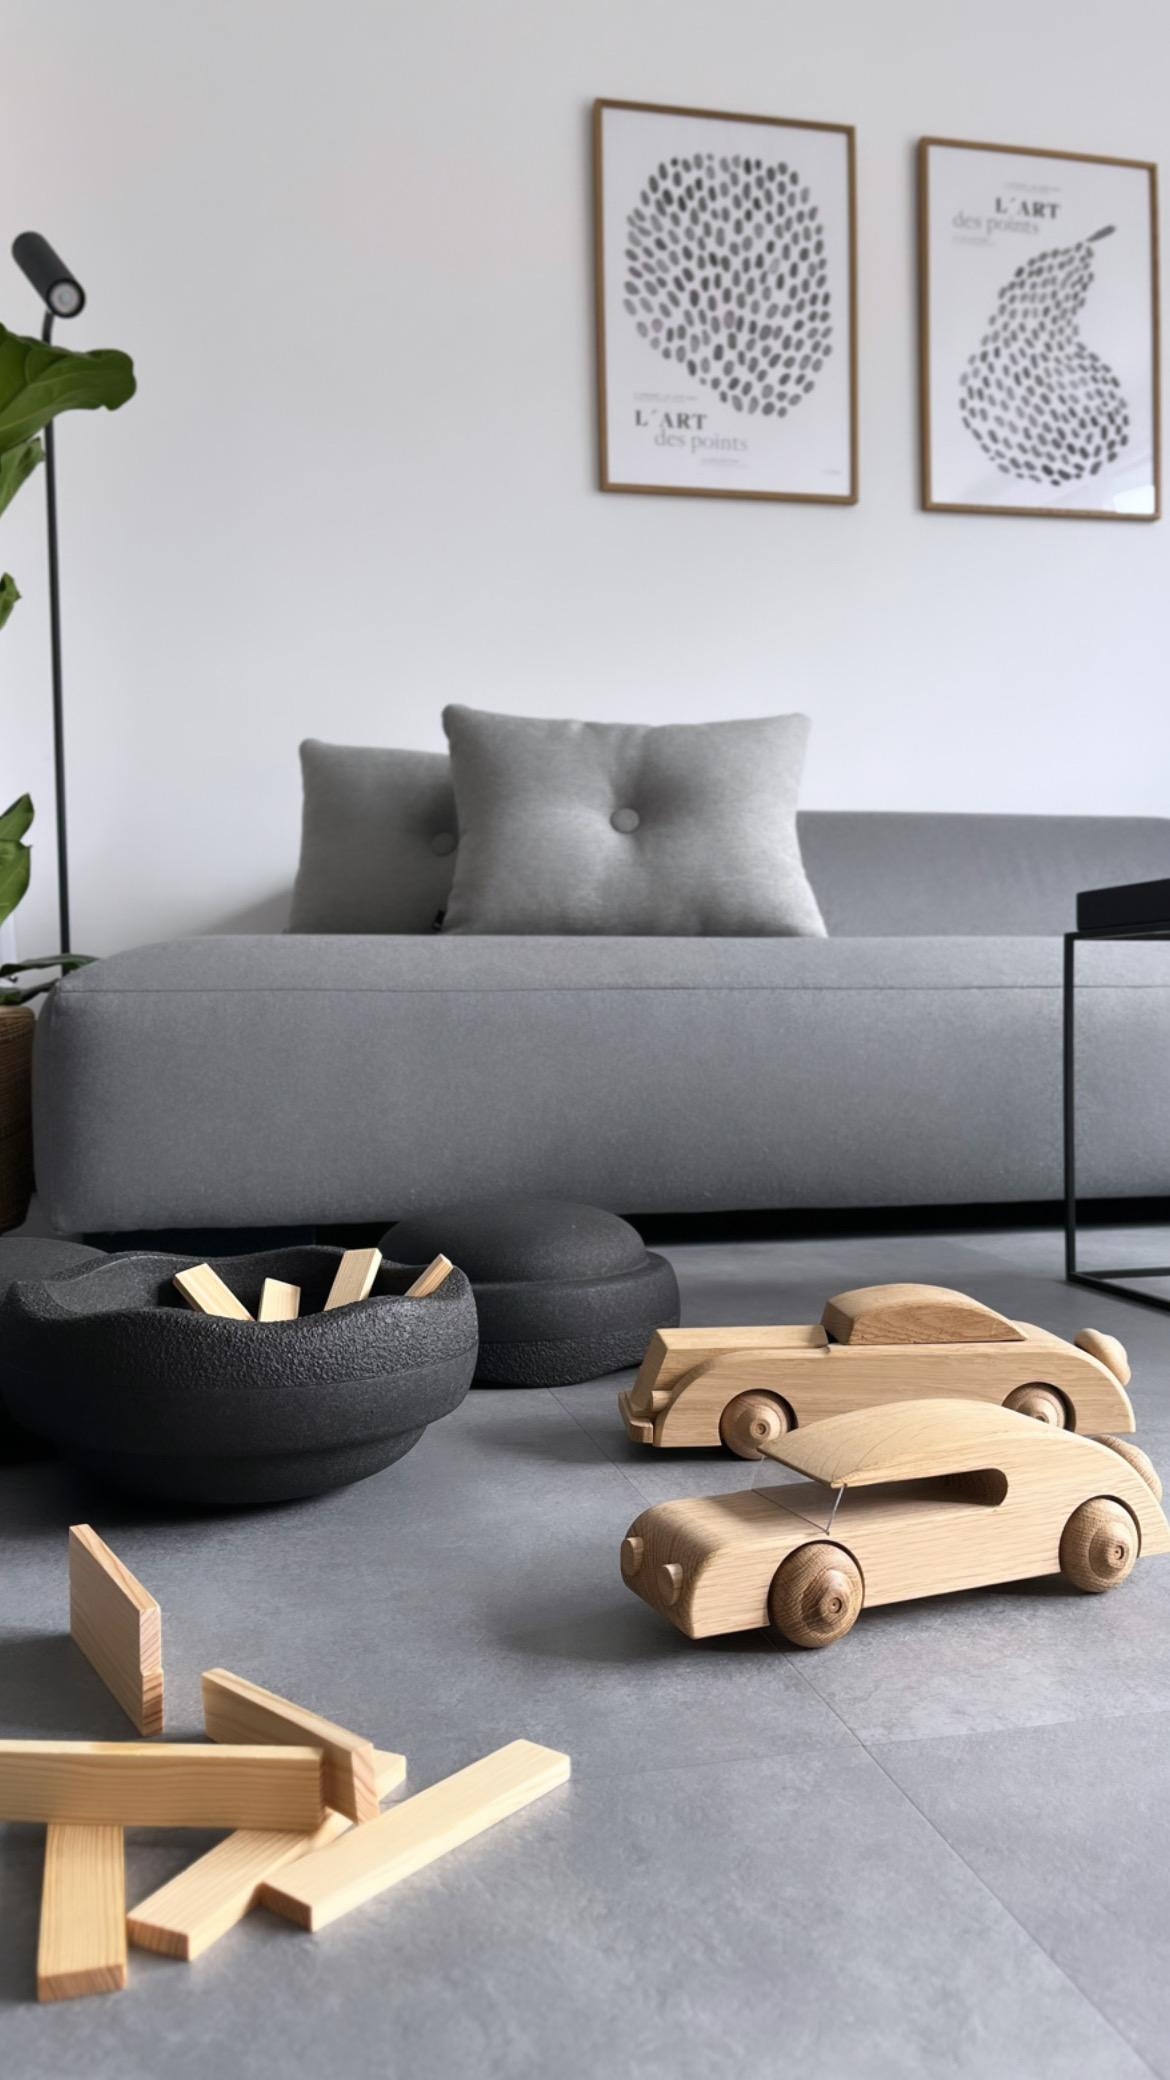 #wohnzimmer#couch#couchstyle
#kinderspielzeug#solebich#haydesign